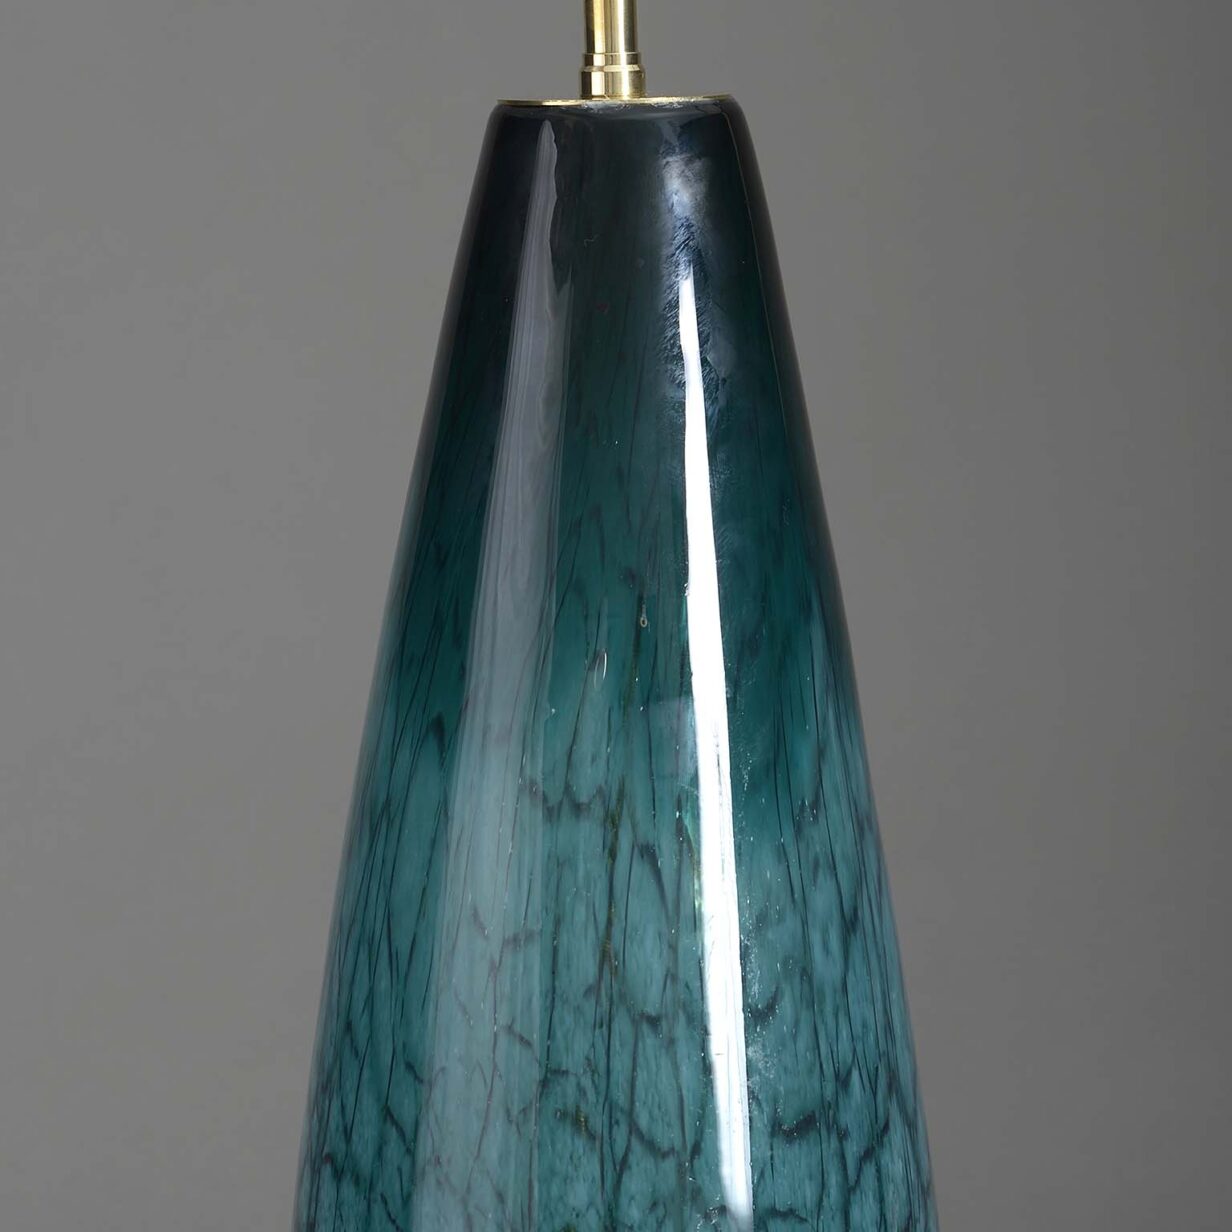 Green glass vase lamp